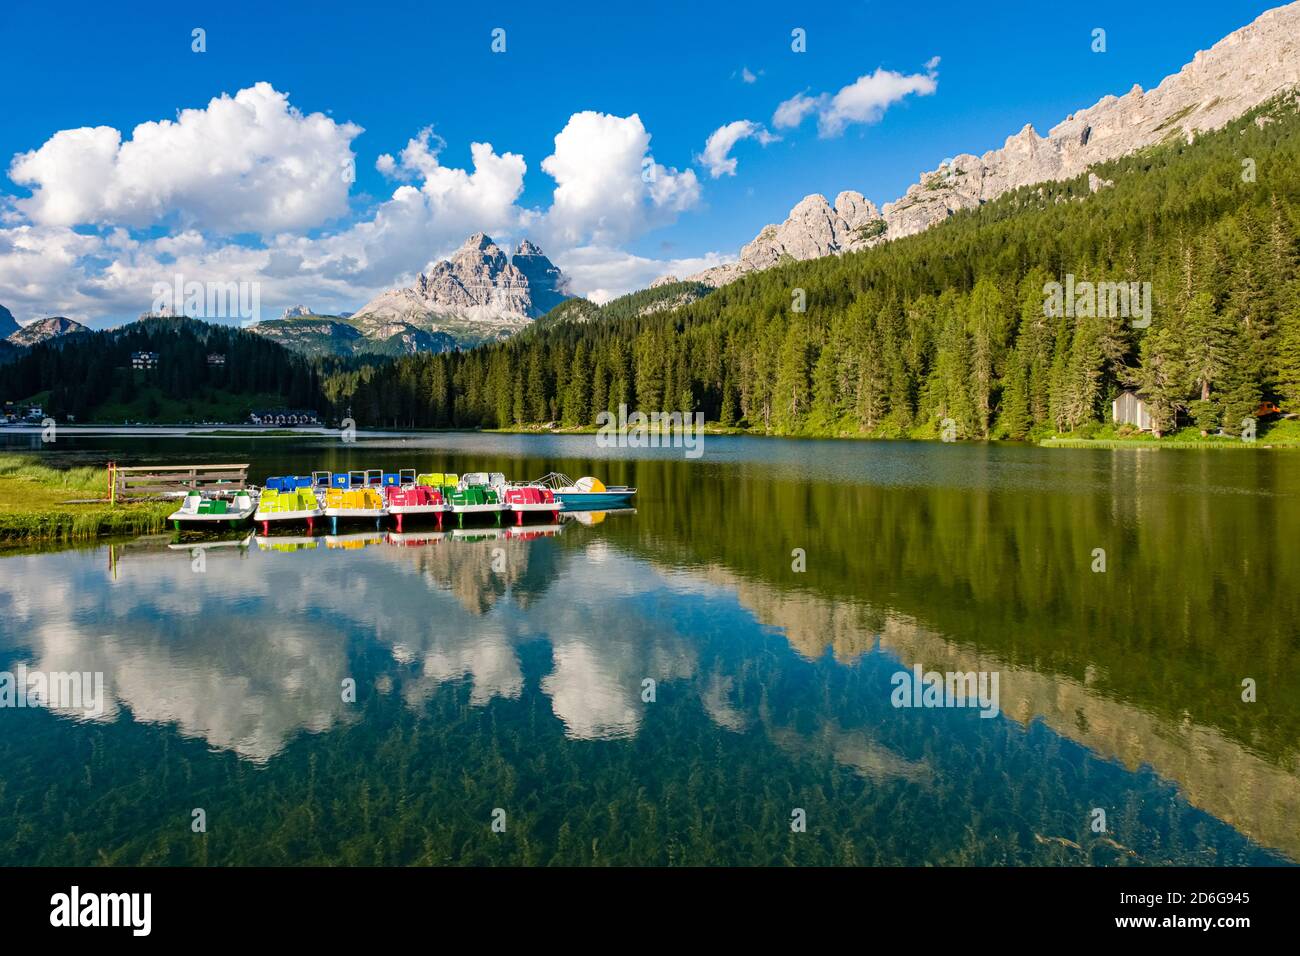 Lake Misurina, Lago di Misurina with pedal boats and the mountain group Tre Cime di Lavaredo mirroring in the water. Stock Photo